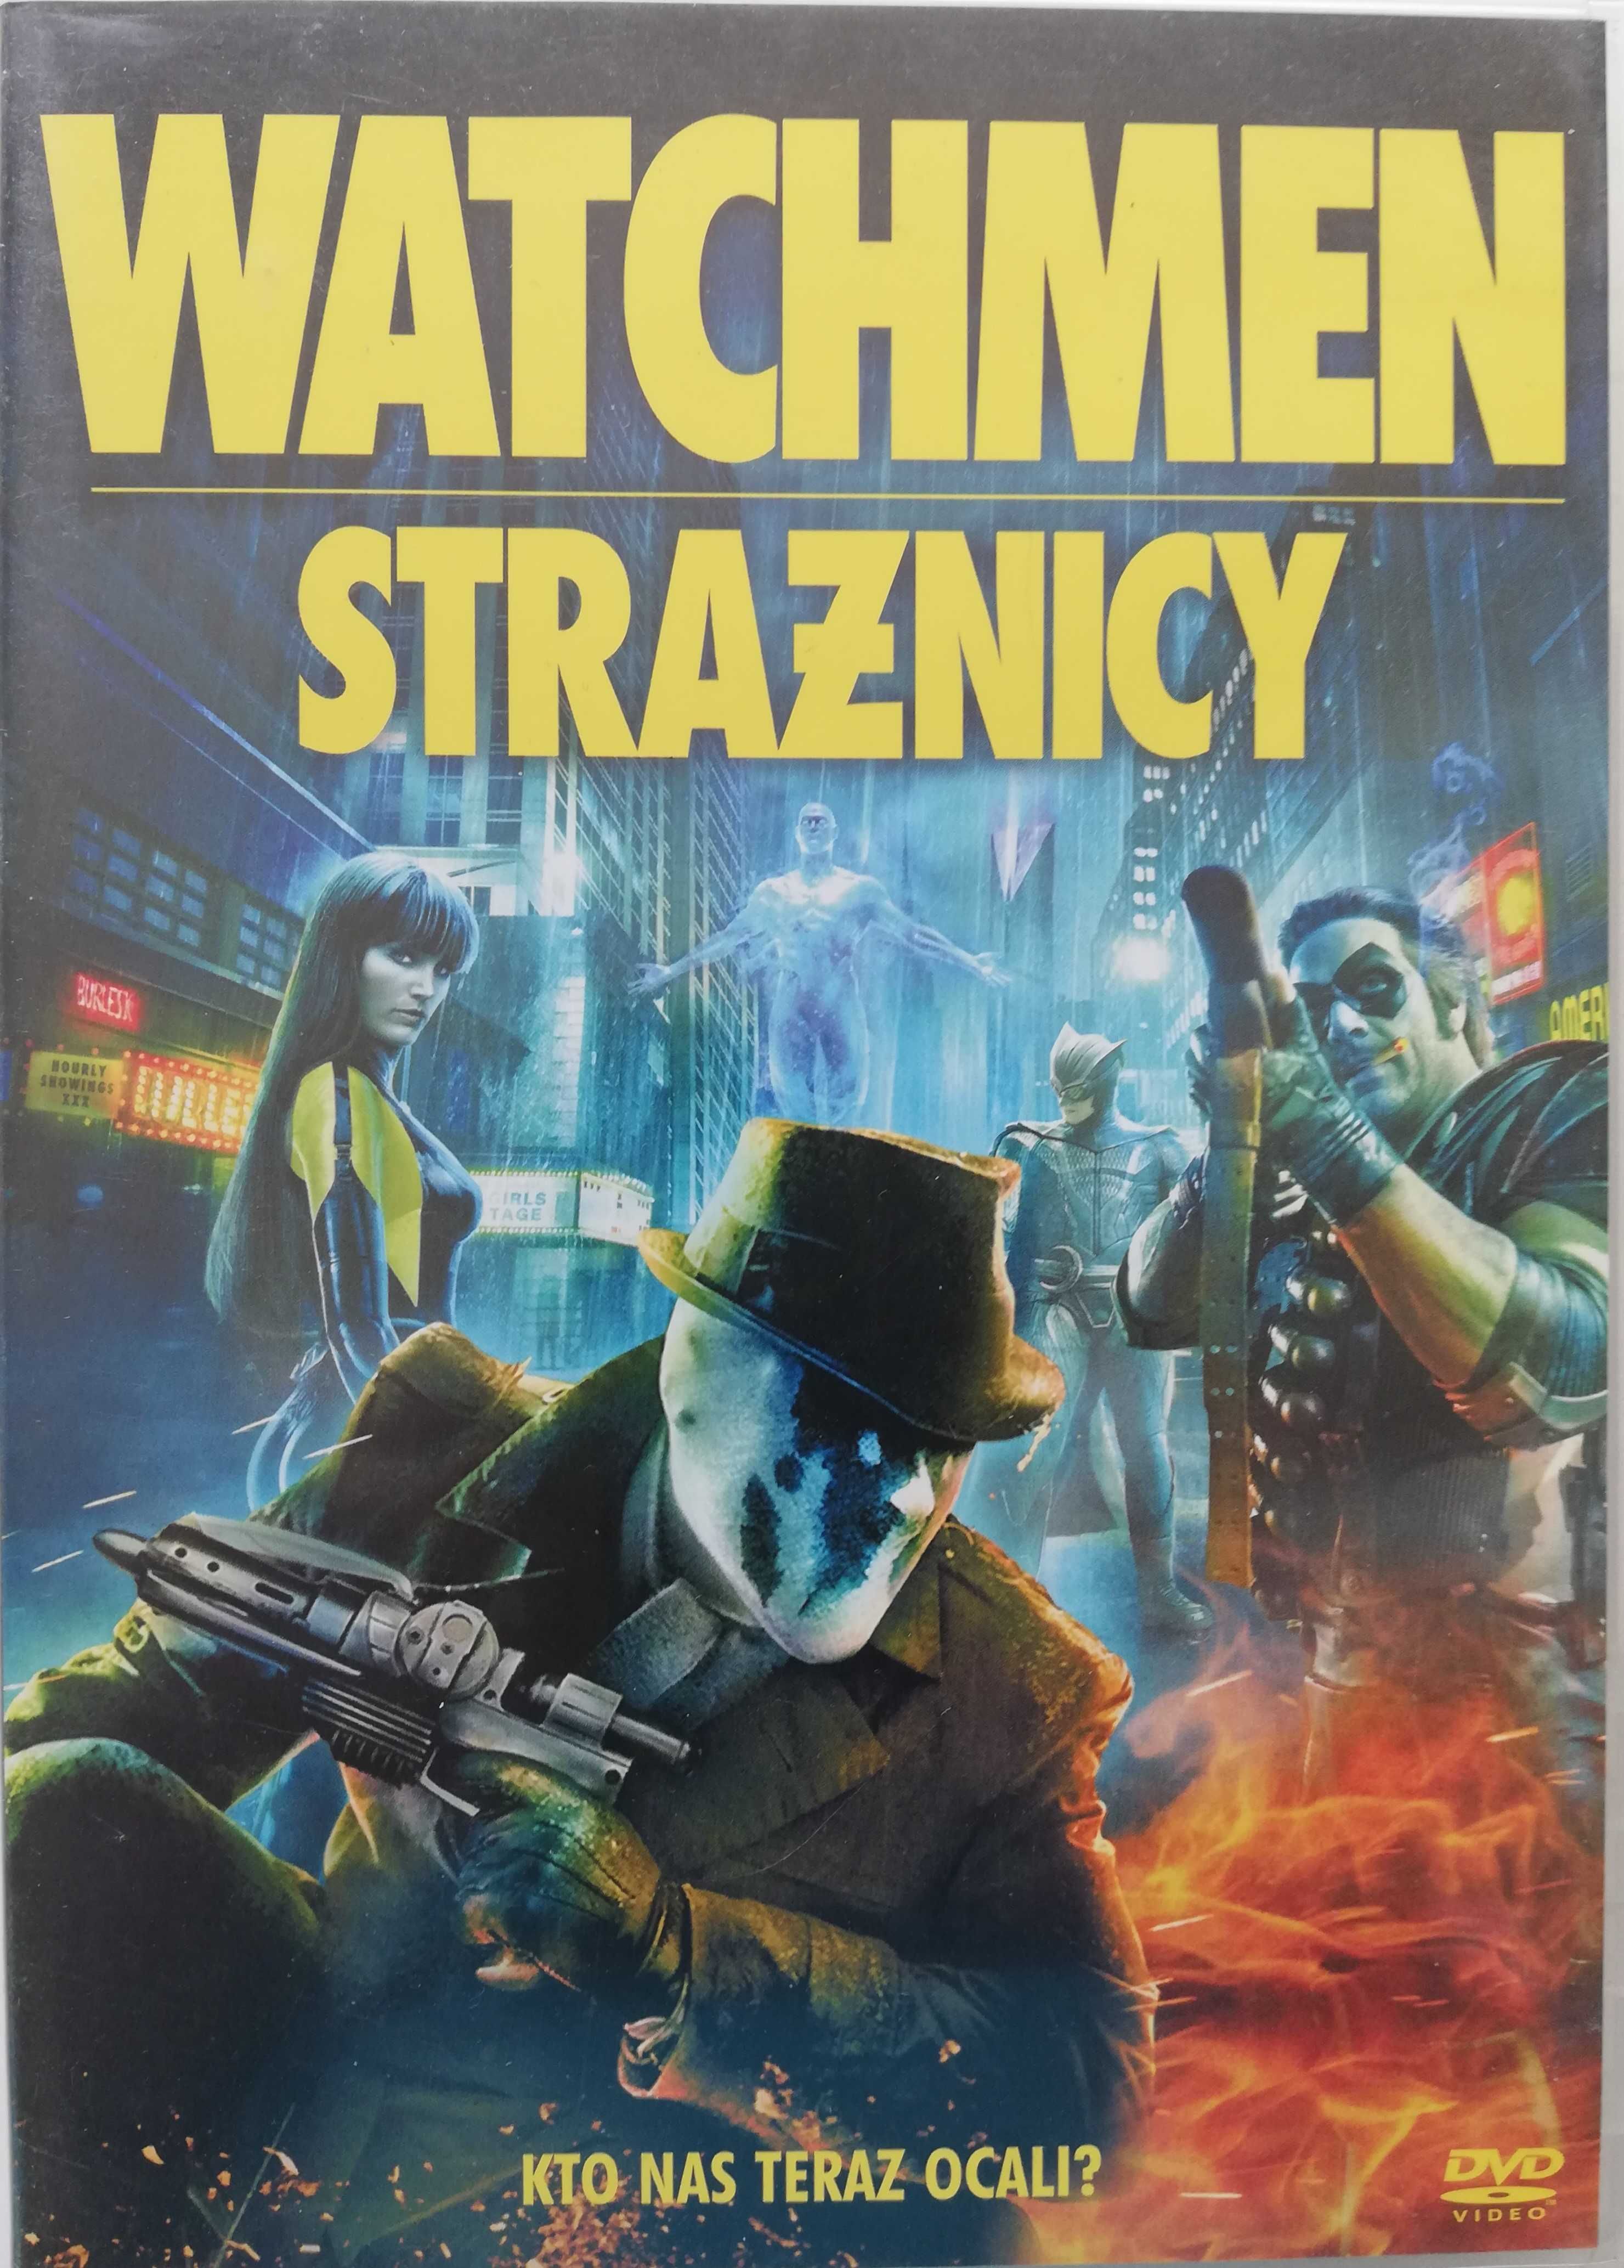 Strażnicy - Watchmen DVD Zack Snyder